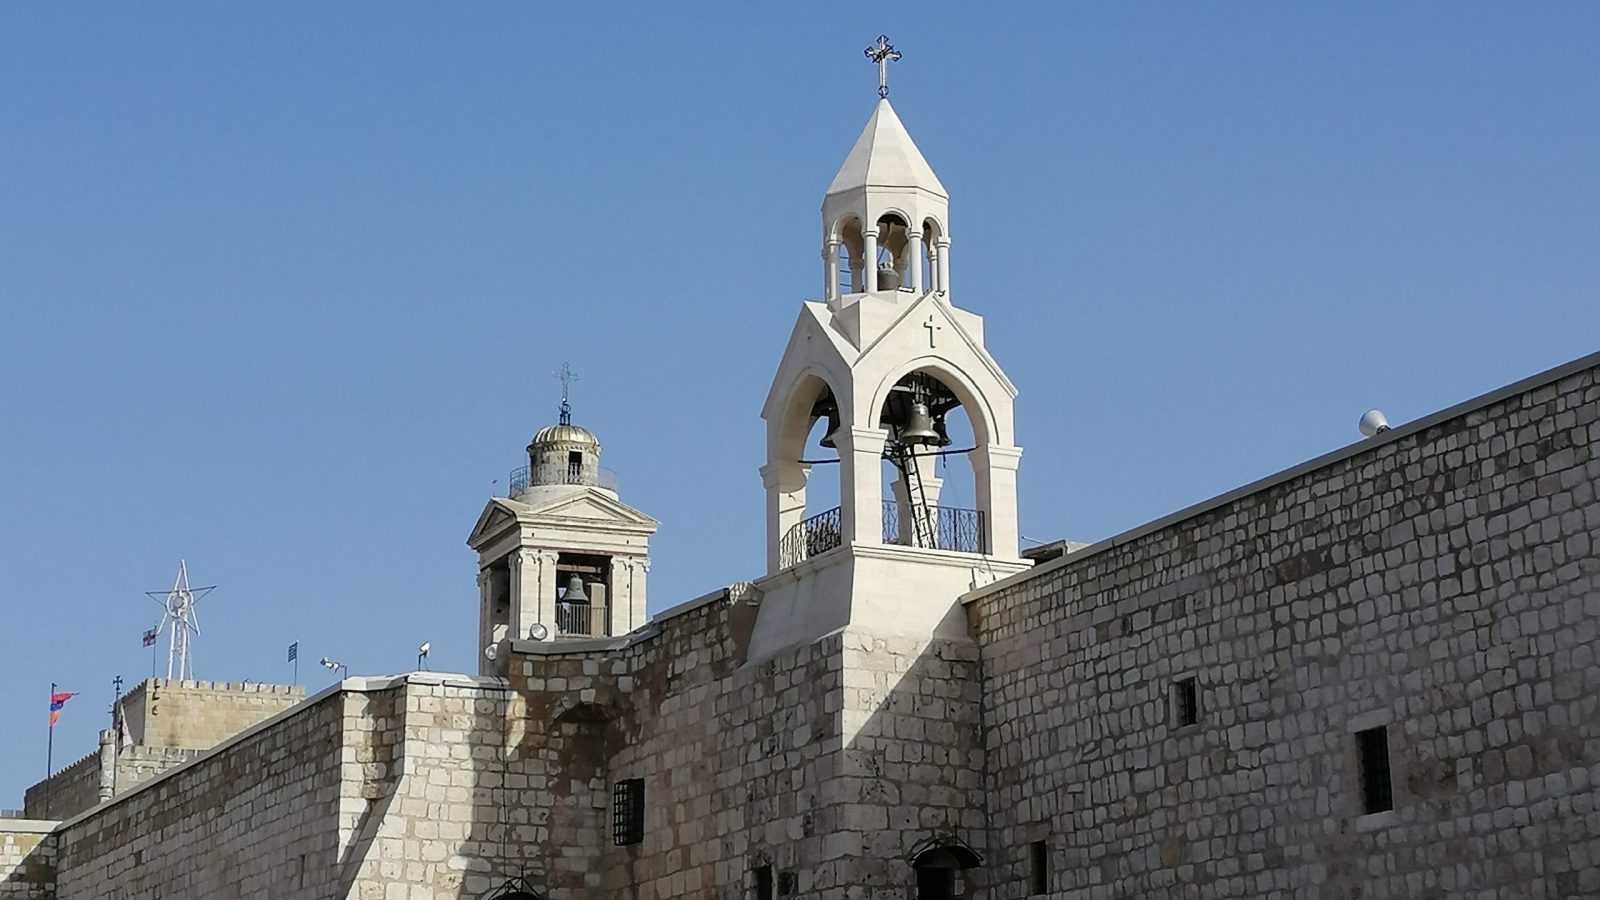 famous Christian Landmarks in Israel